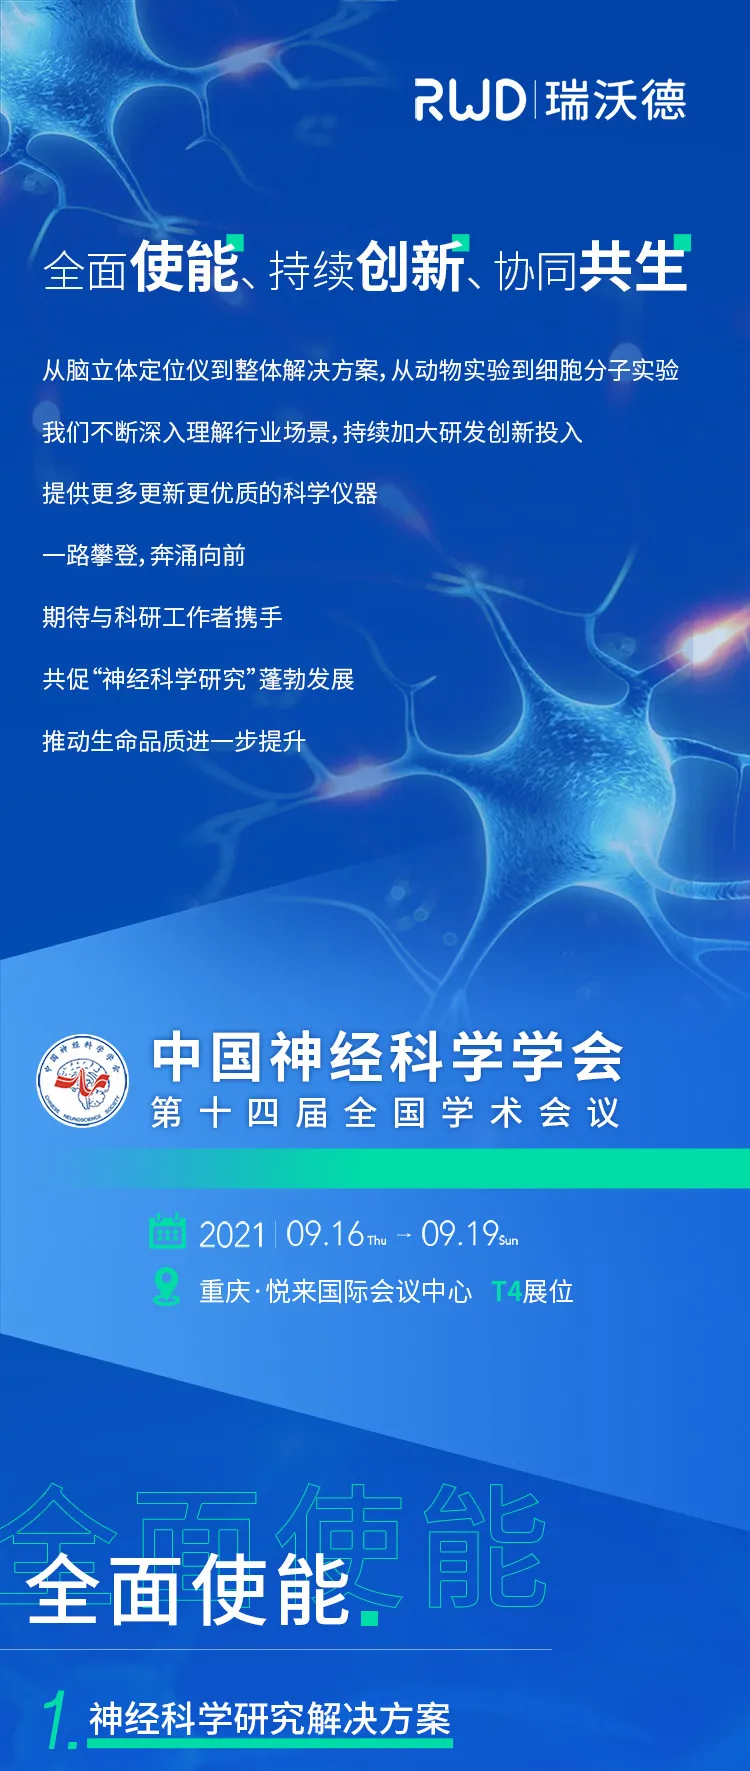 会议邀请︱瑞<em>沃德</em><em>与您相约</em>中国神经科学学会第十四届全国学术会议